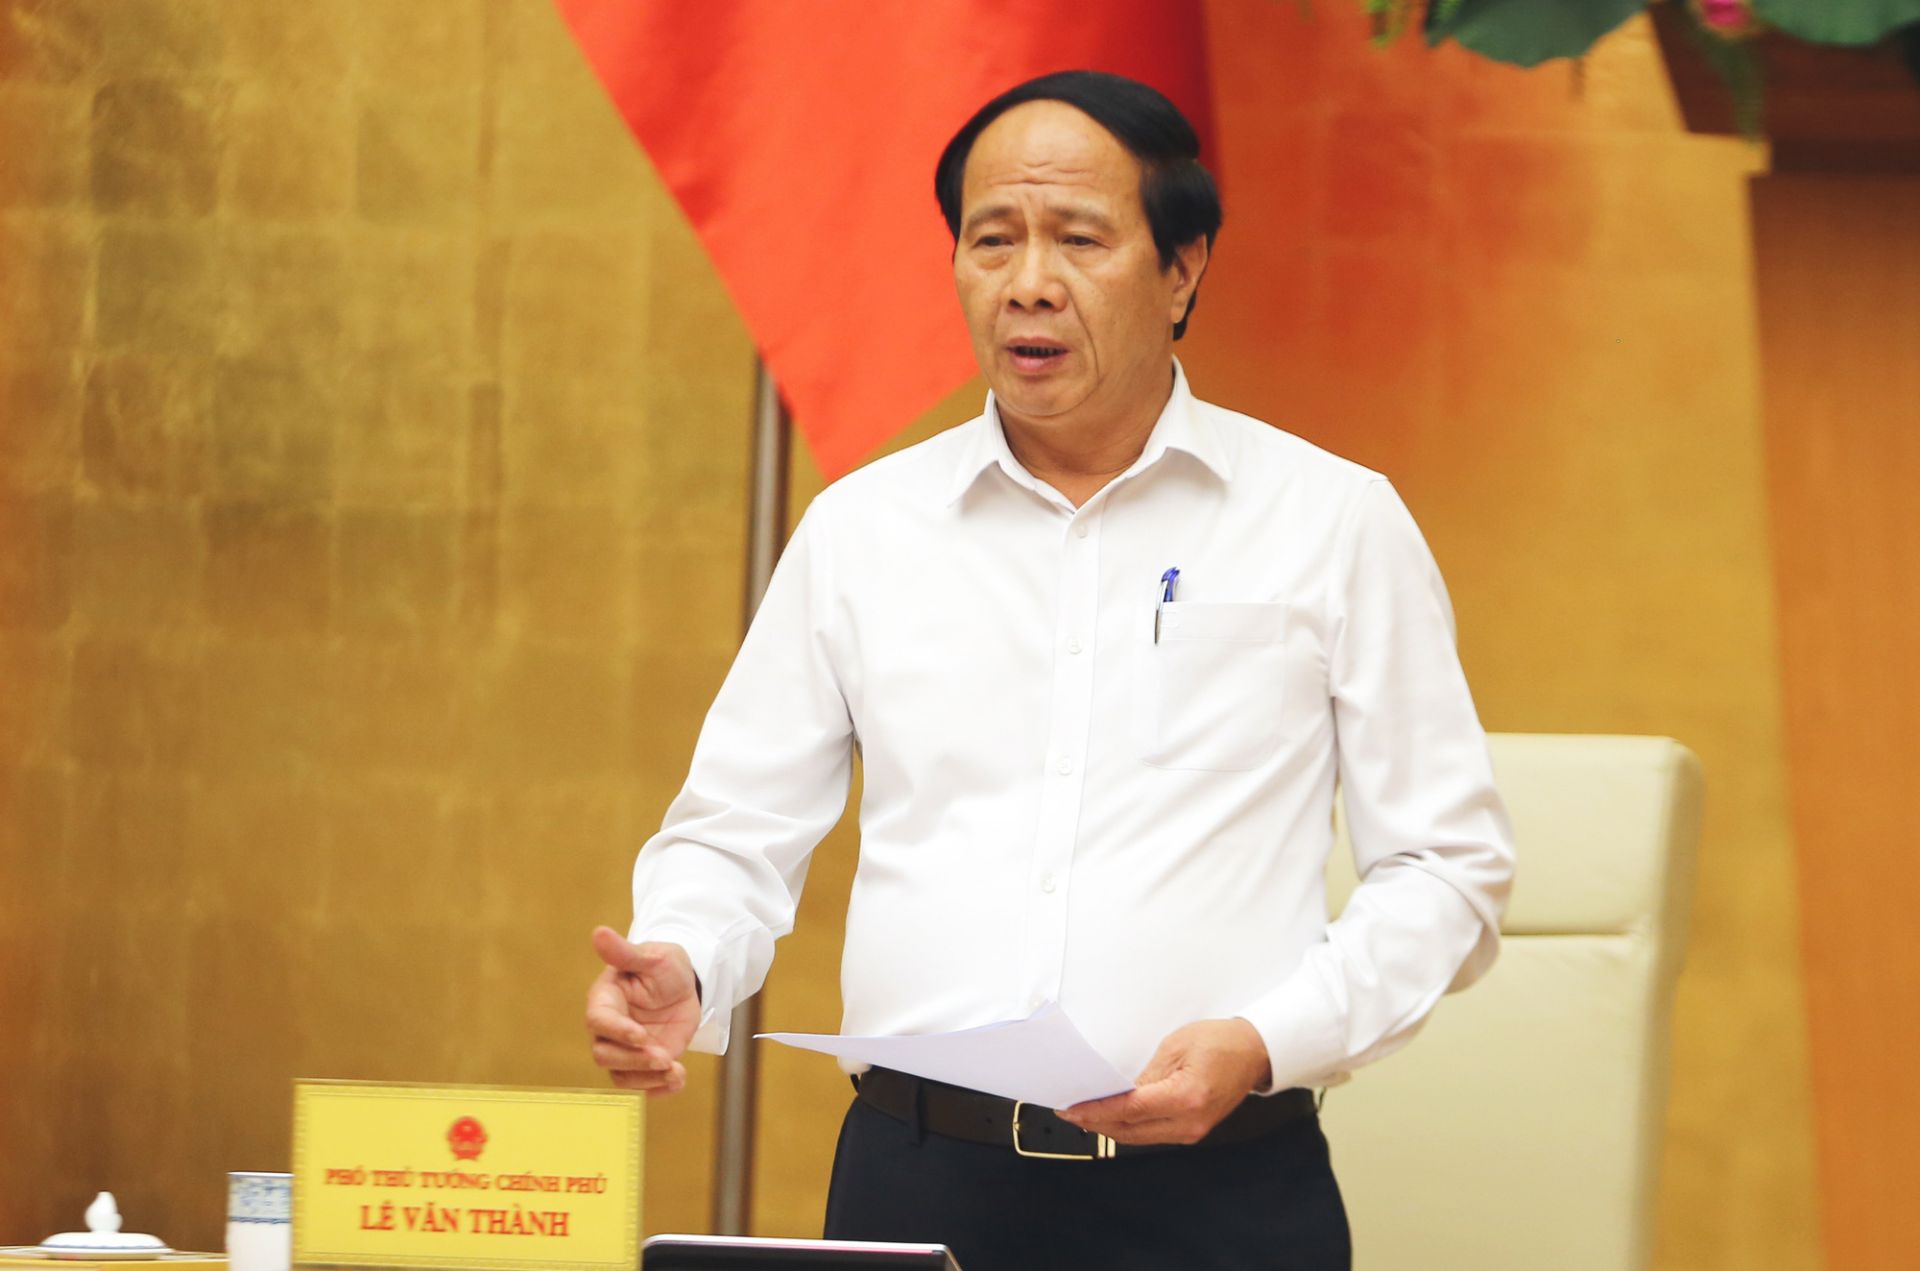 Phó Thủ tướng Lê Văn Thành đề nghị các địa phương rà soát những dự án sử dụng nguồn vốn địa phương đã được phân bổ vốn nhưng không khả thi